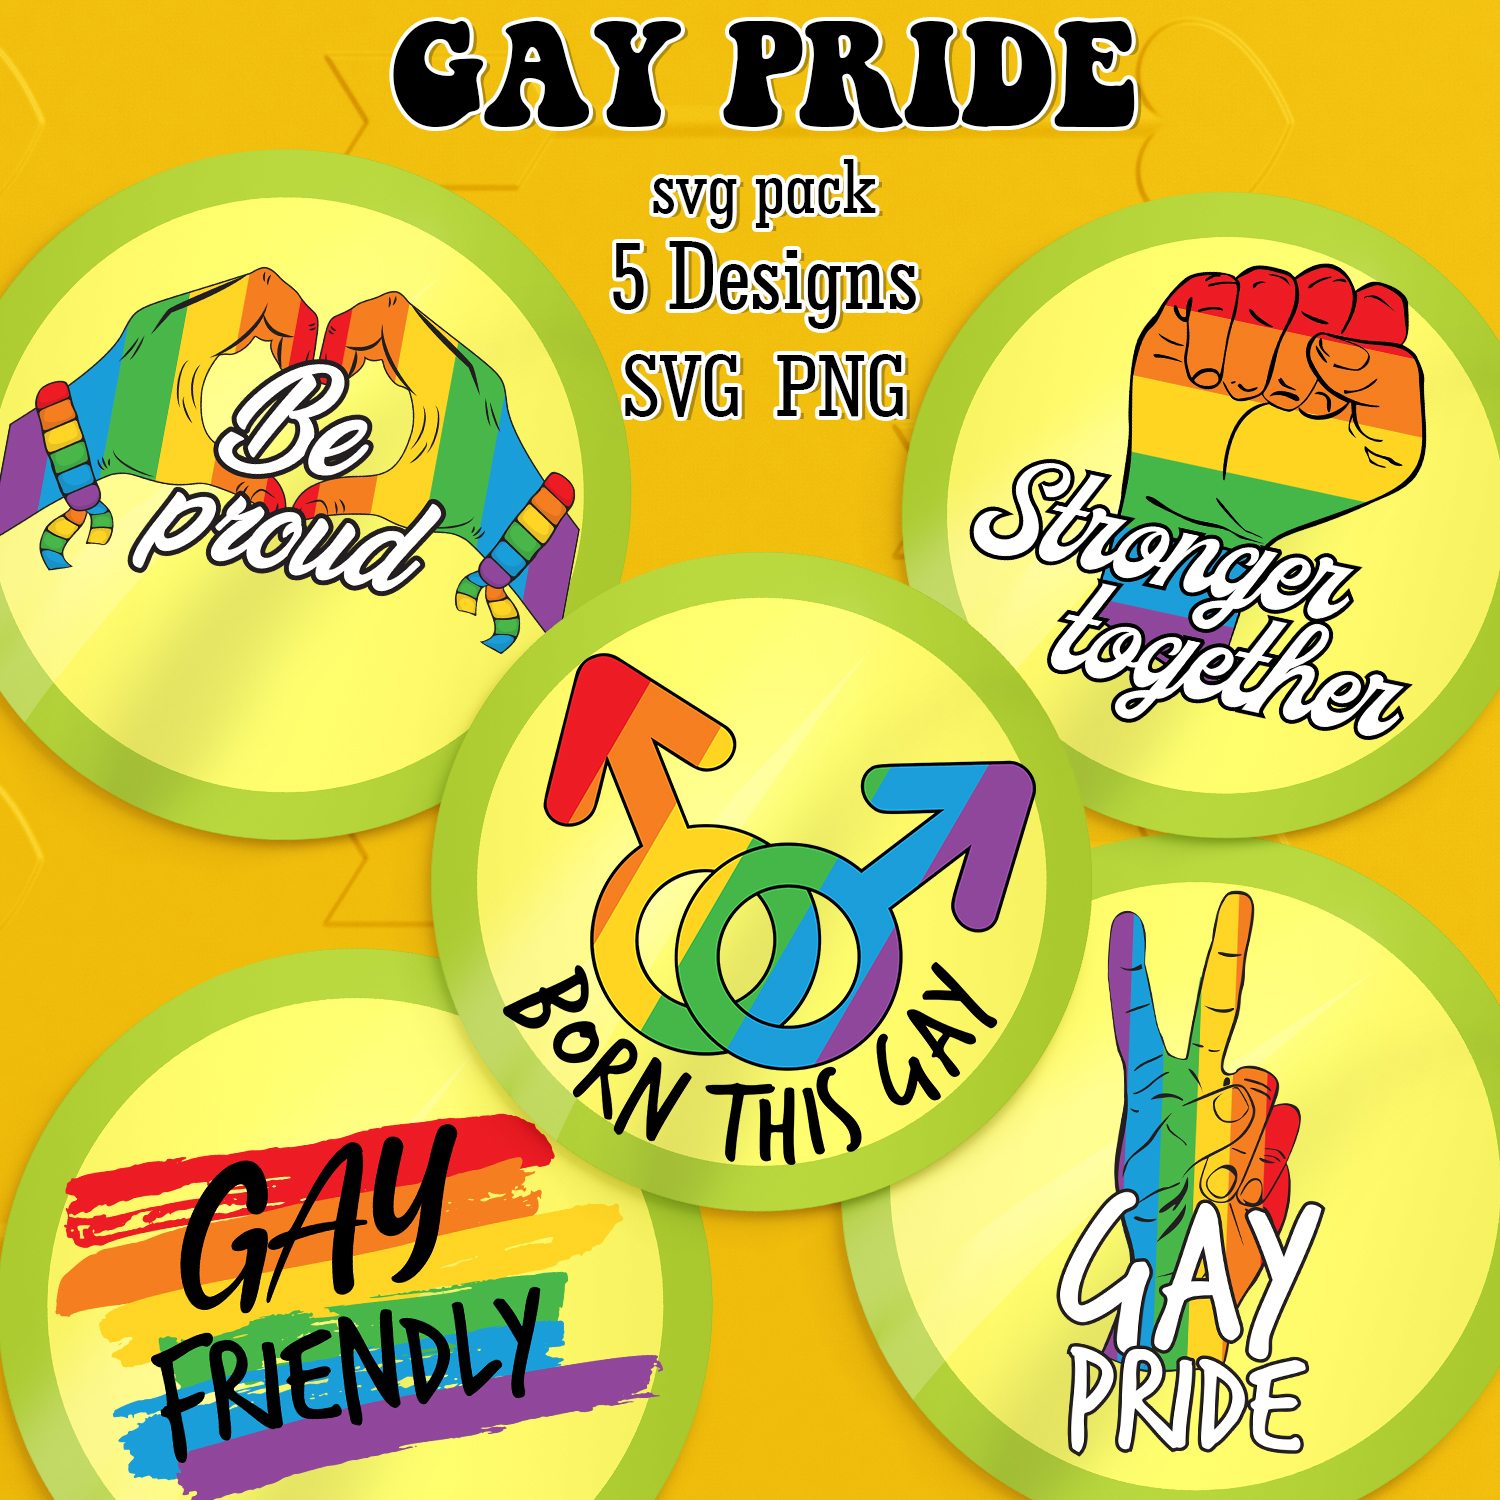 Prints of gay pride svg.